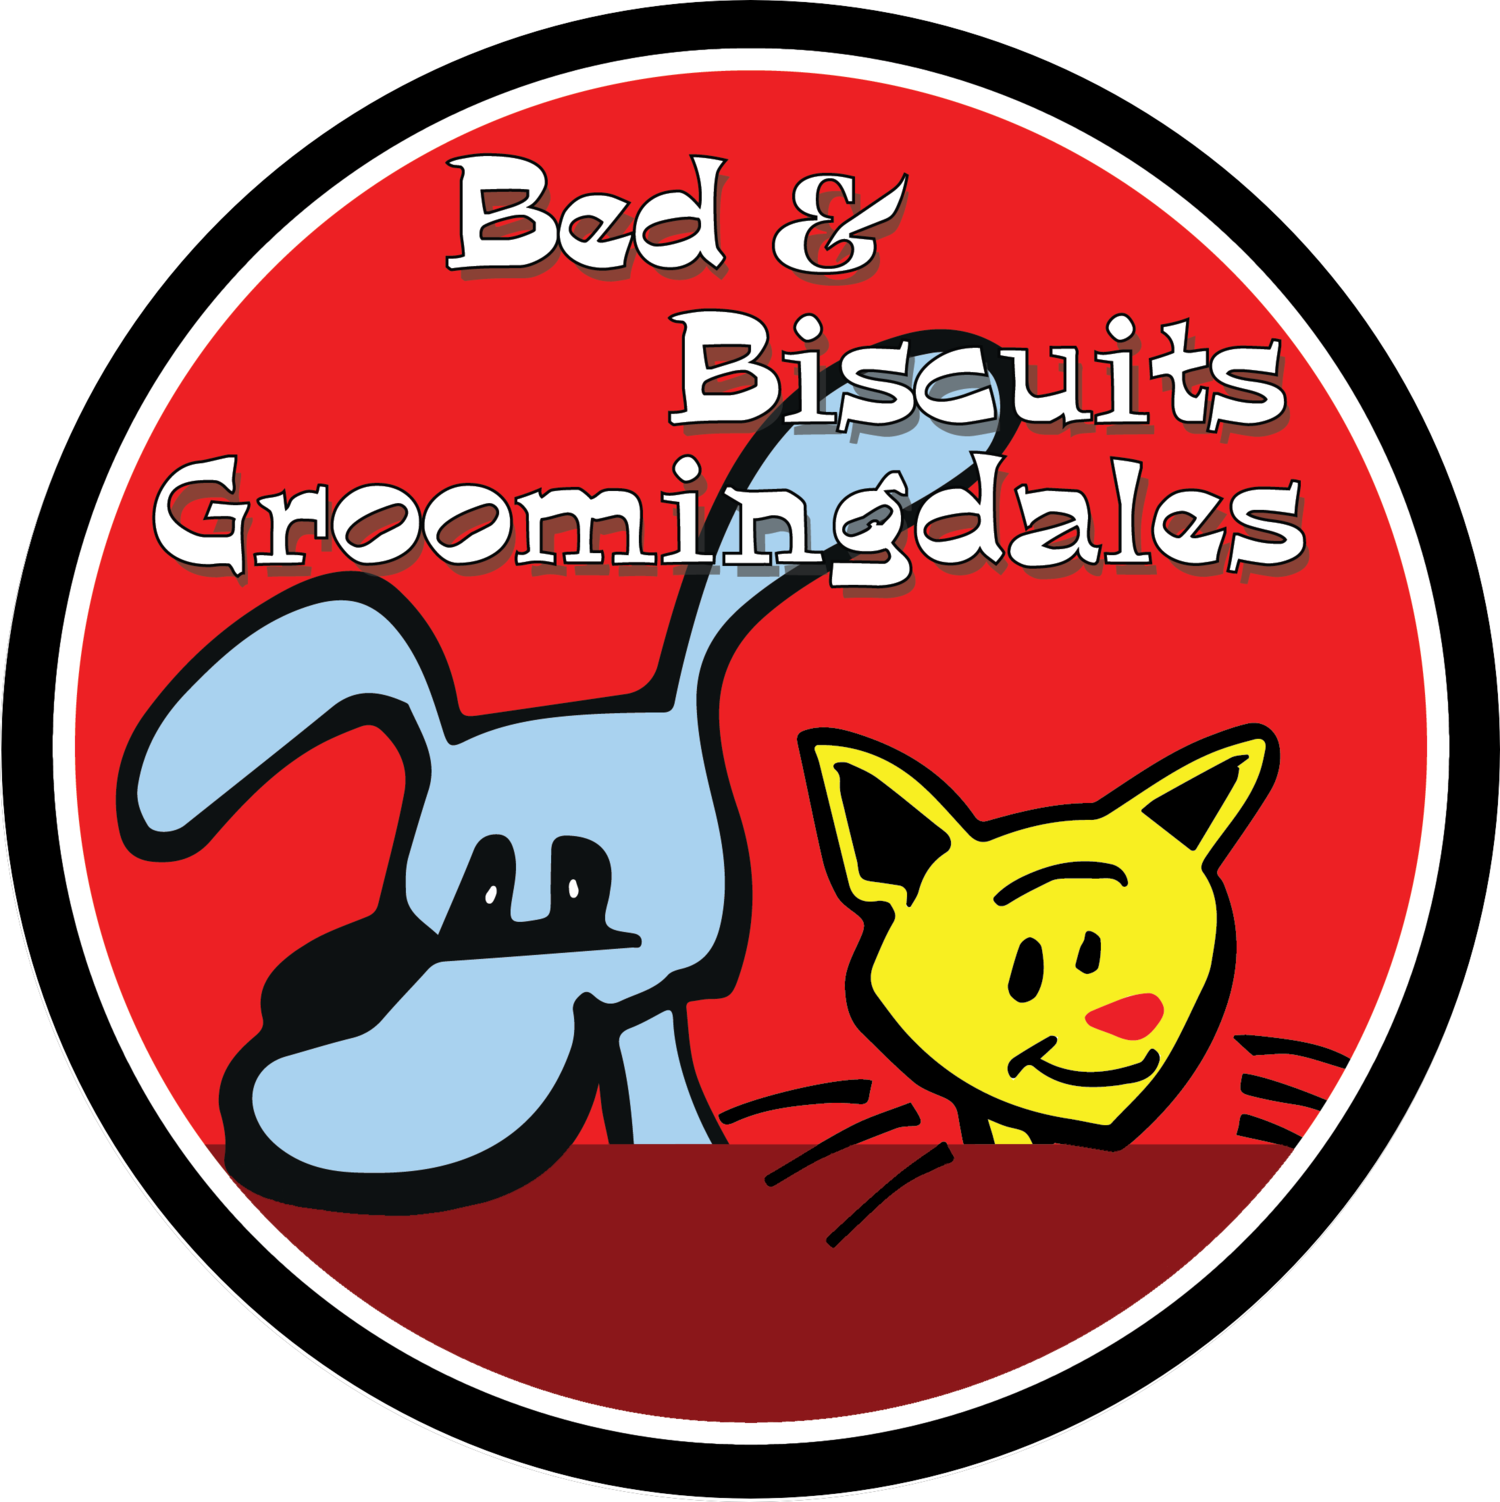 Bed & Biscuits Groomingdales